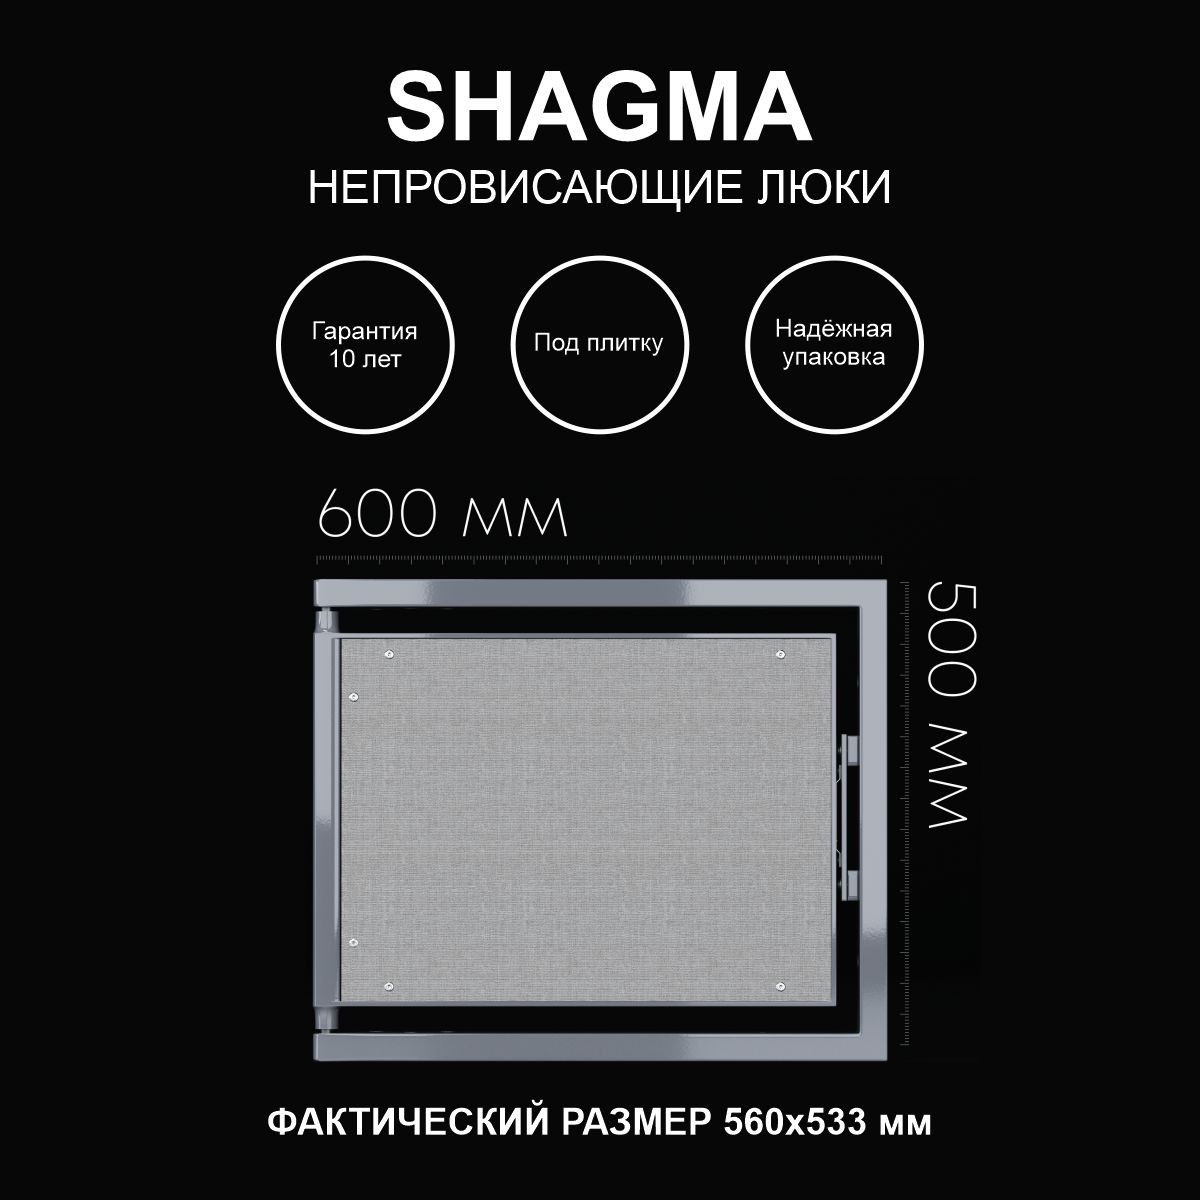 Люк SHAGMA ревизионный под плитку сантехнический 600х500 мм